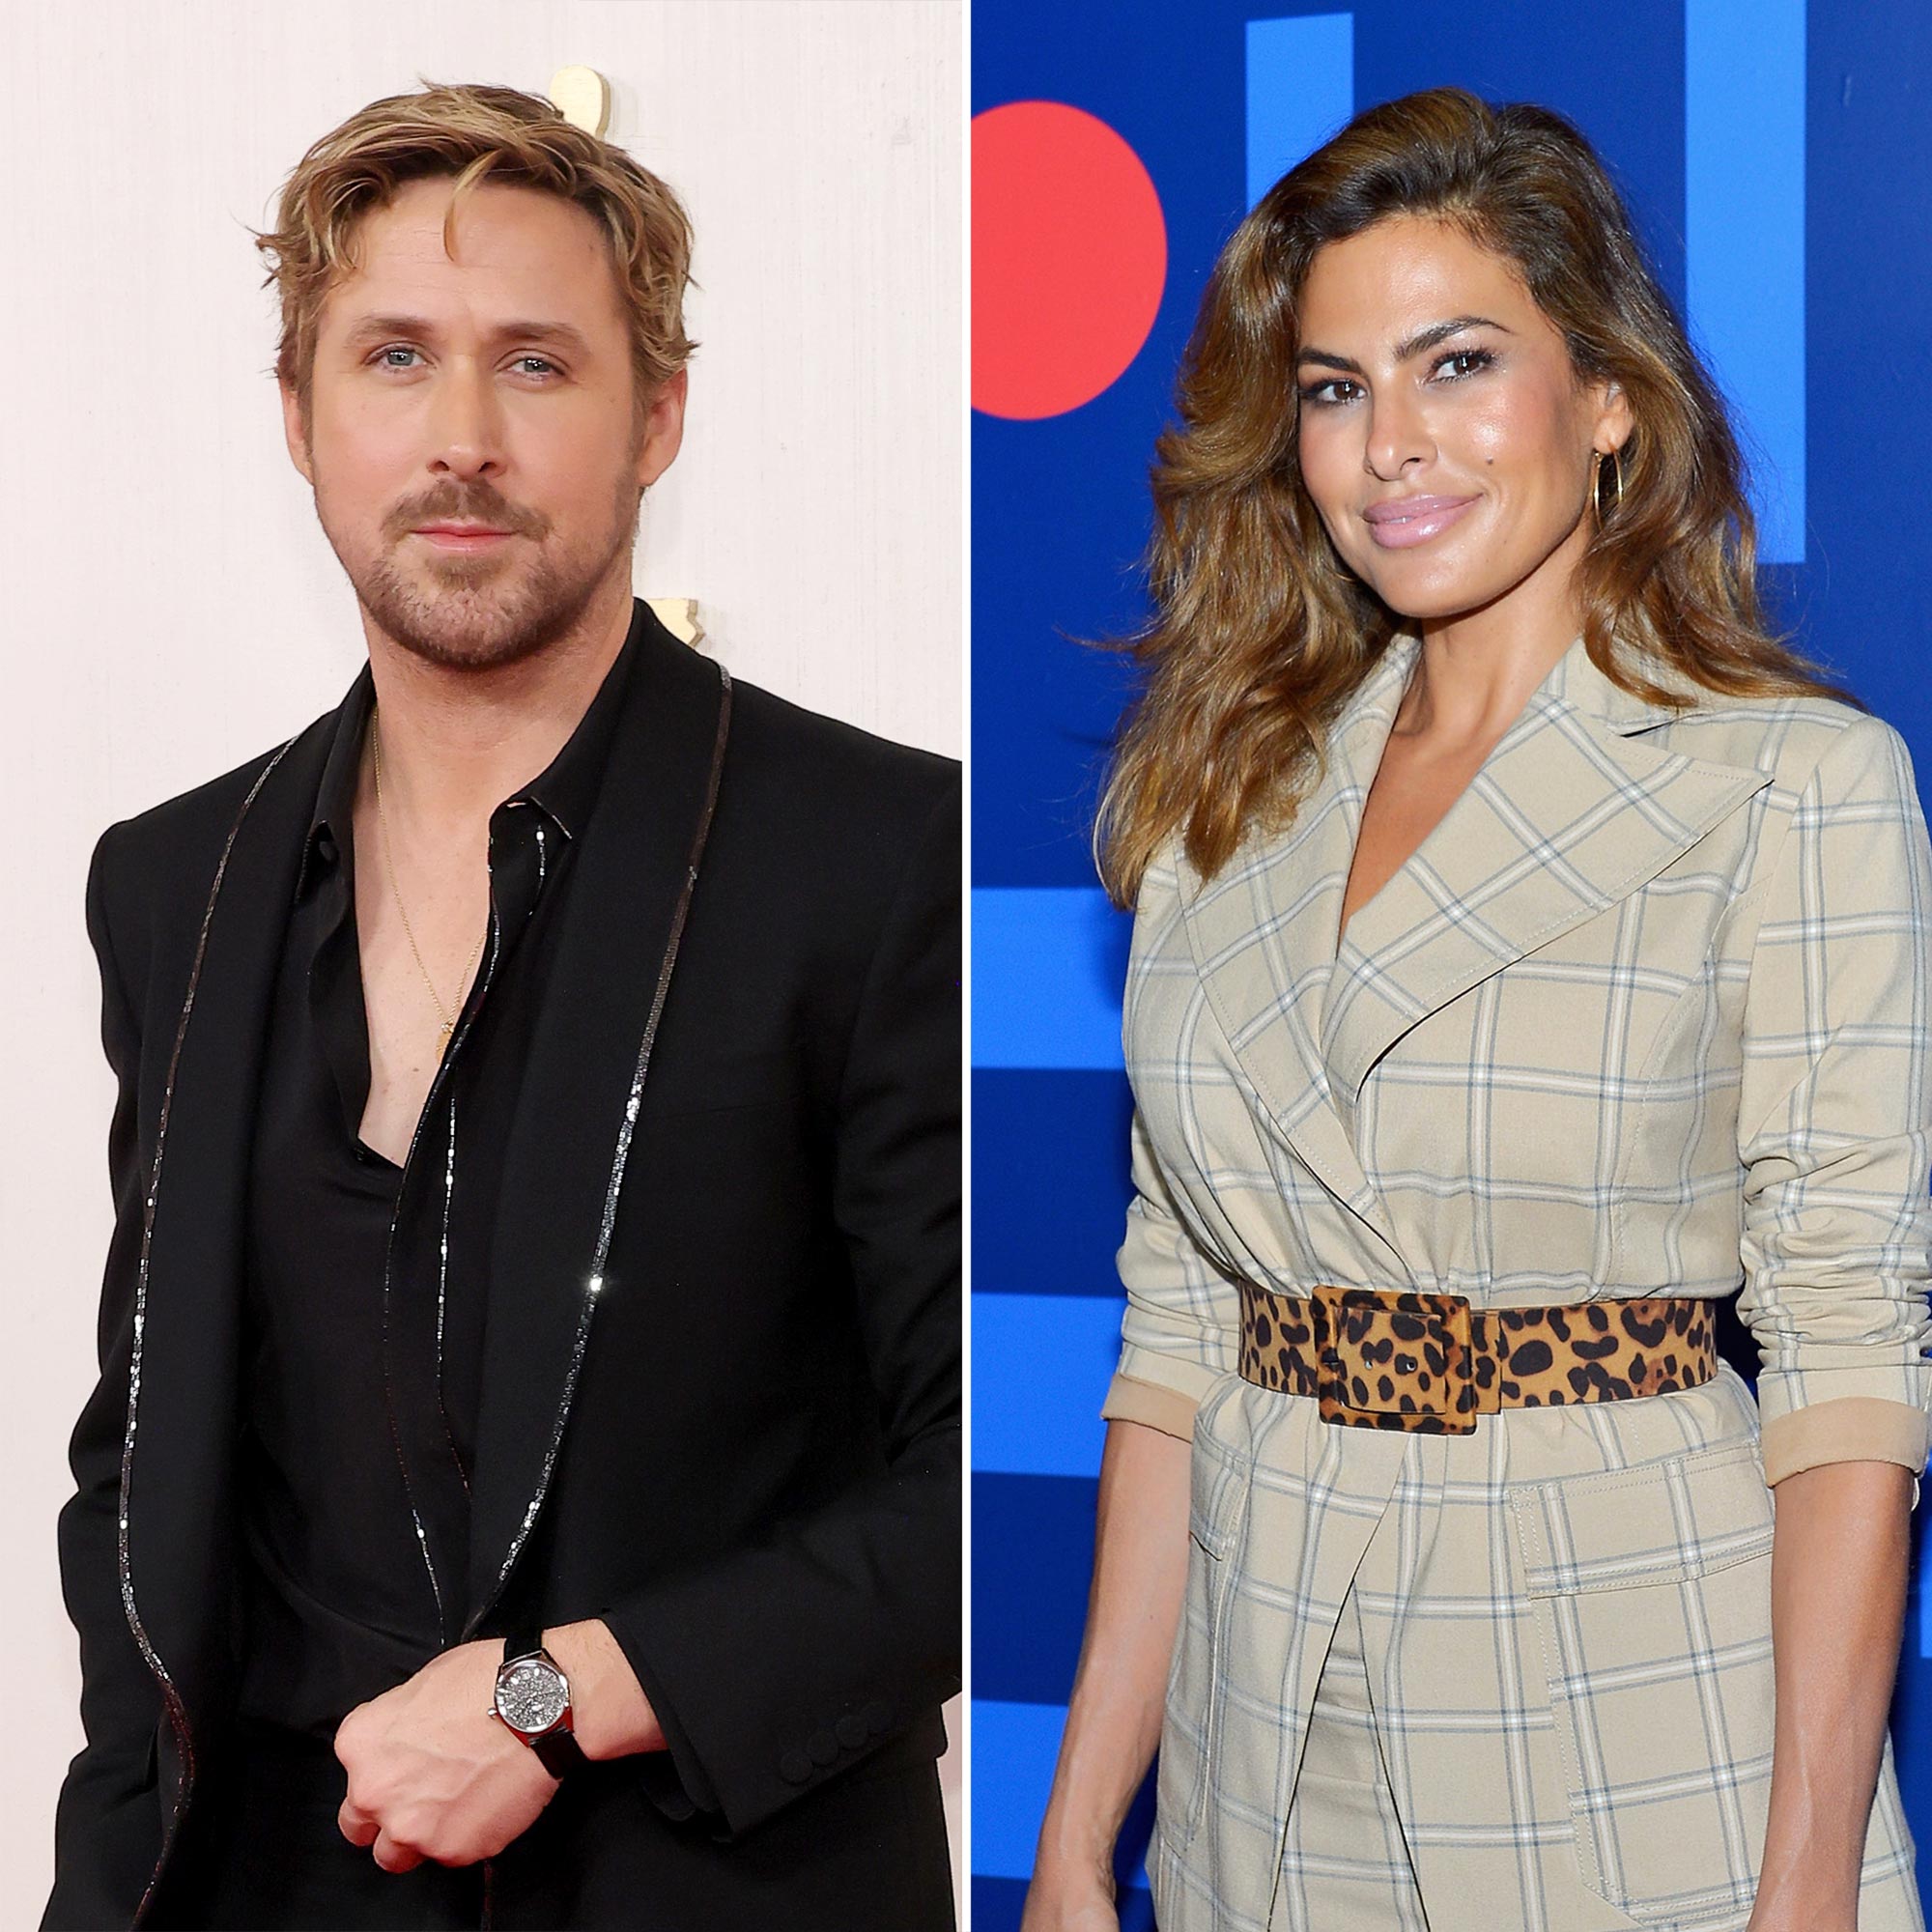 Ryan Gosling Won't Take 'Dark' Roles to Benefit Eva Mendes and Kids